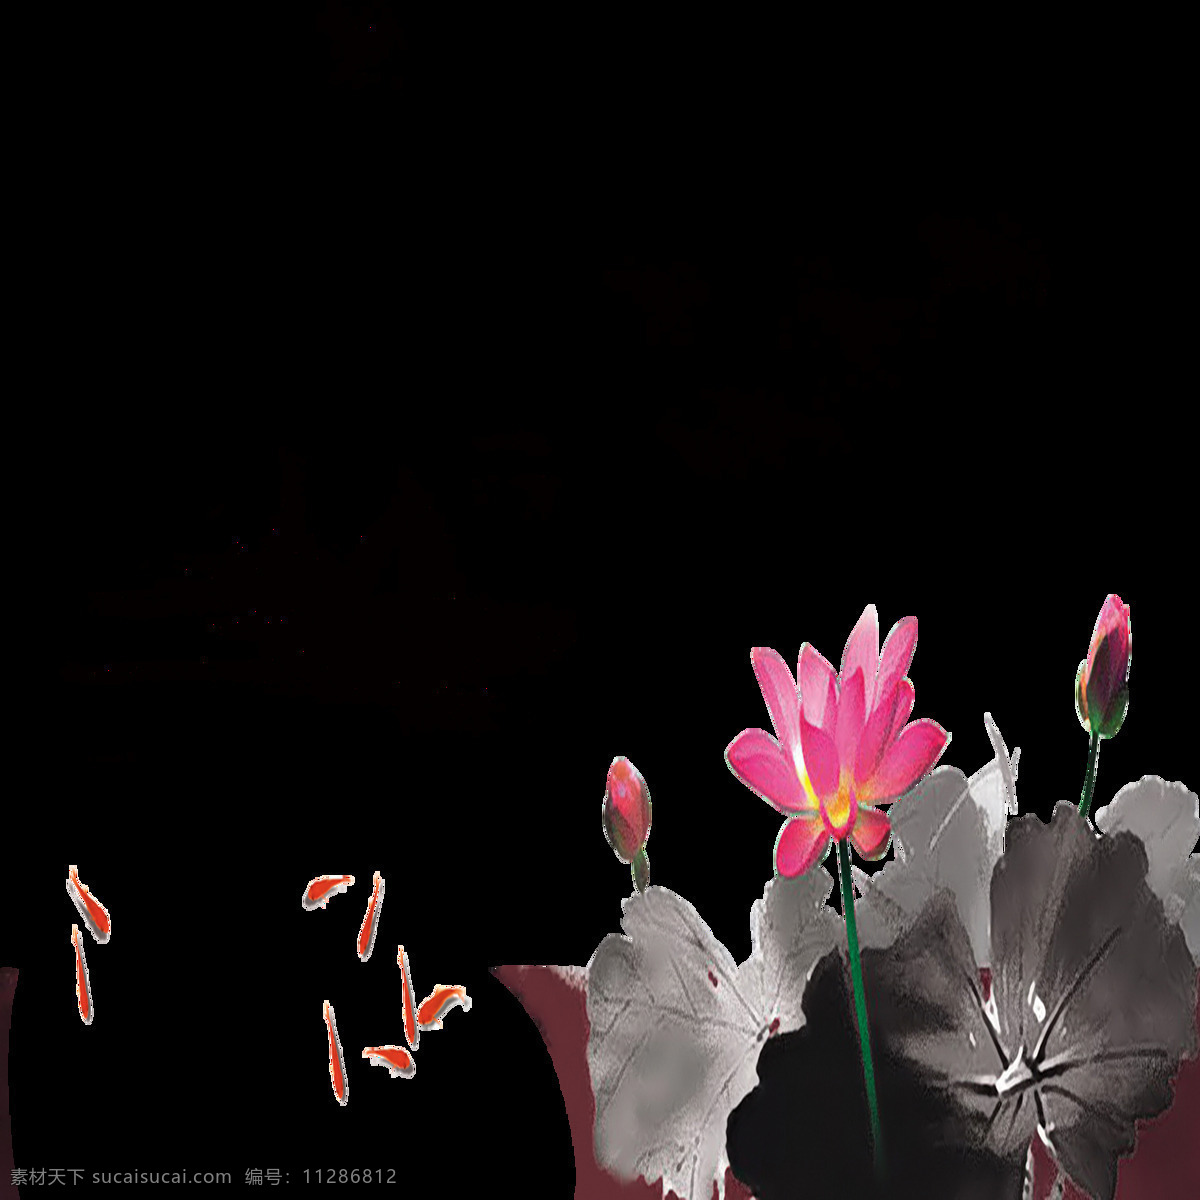 中国 风 荷叶 荷花 绘画 中国风 传统 水墨画 创意设计 植物 花朵 荷叶荷叶 水彩 新中式设计 国画 绿叶 夏日 装饰画 文化艺术 绘画书法